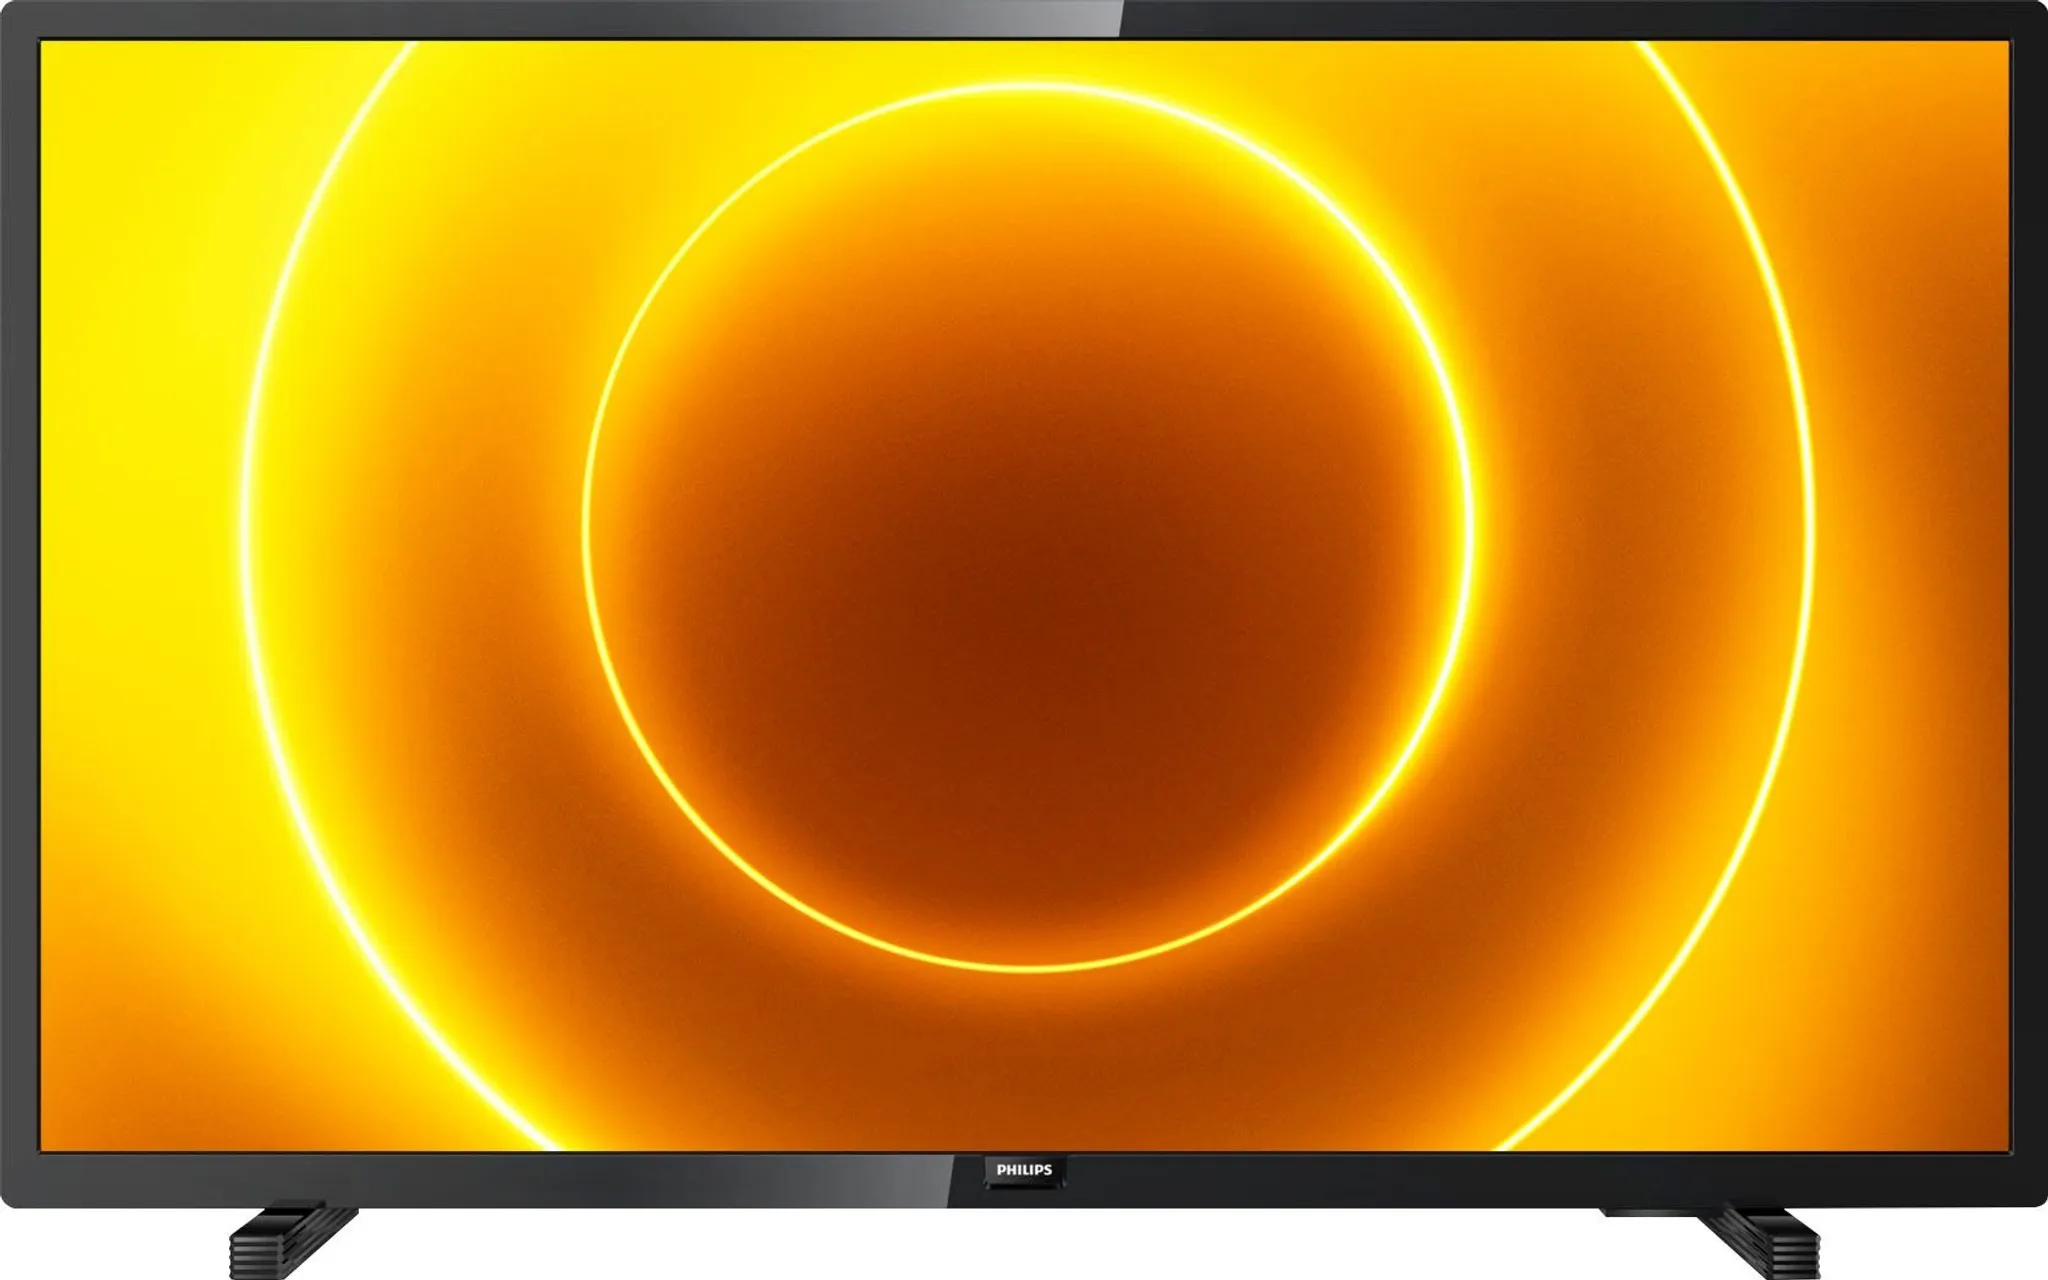 Philips HD LED TV 80cm Zoll) 32PHS5505 (32